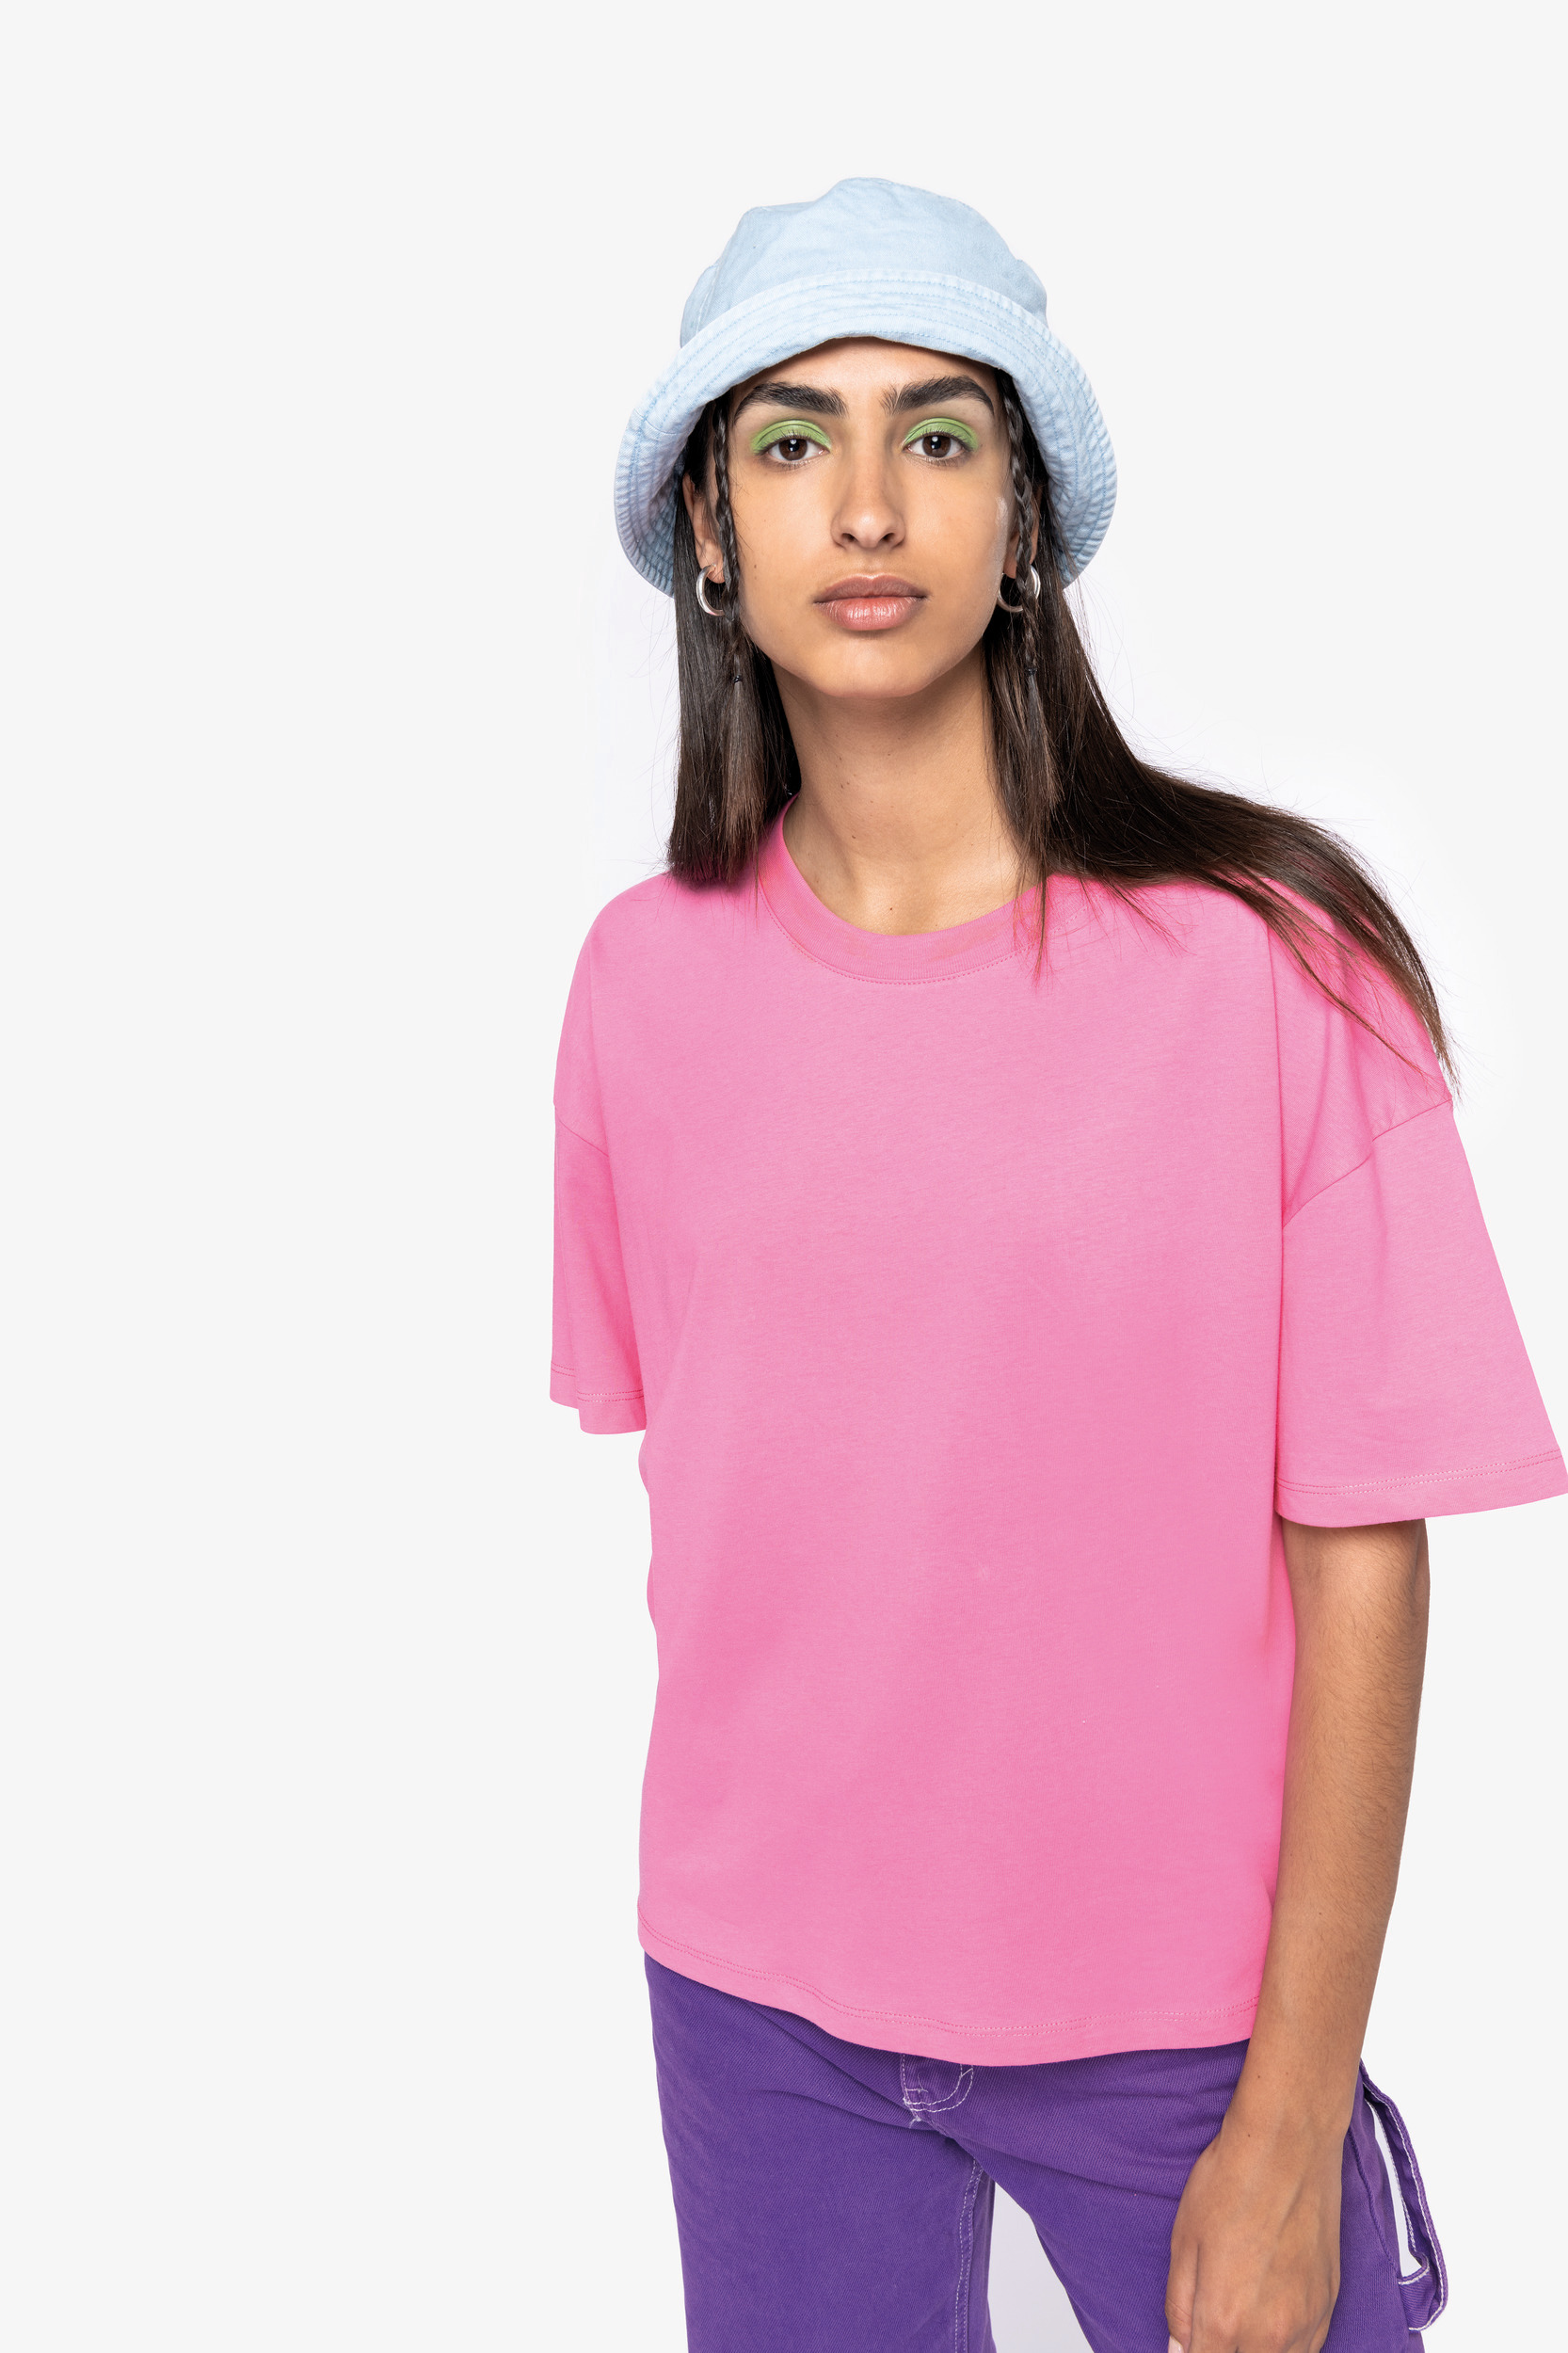 NS313 - Camiseta ecorresponsable oversize mujer